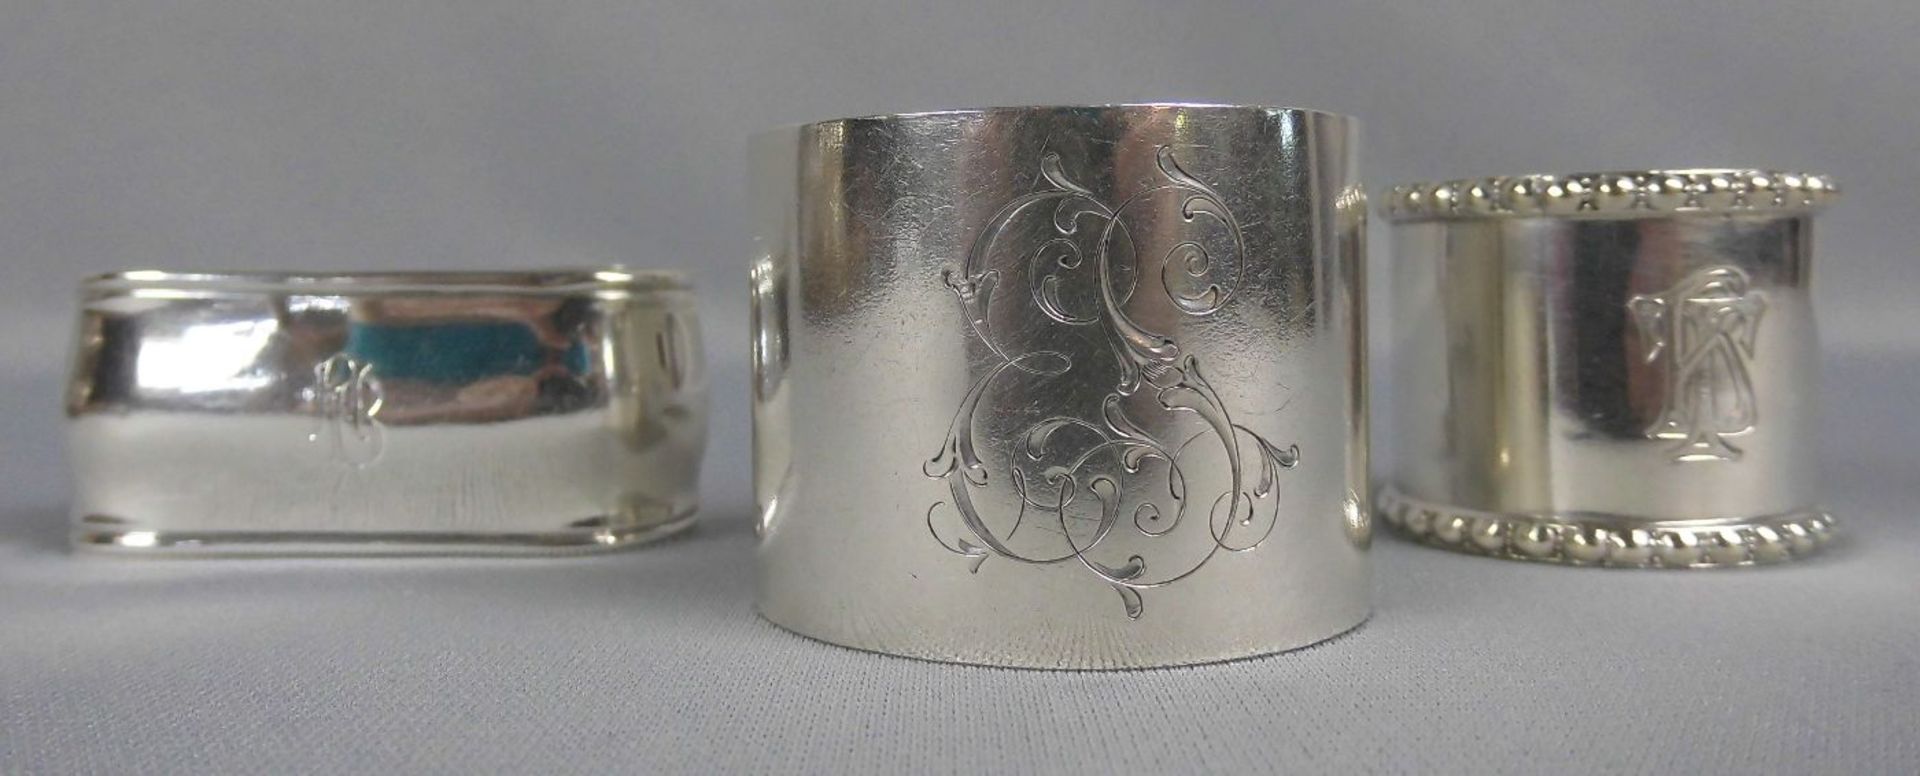 3 SERVIETTENRINGE / napkin rings, unterschiedlicher Form und Größe, 800er und 835er Silber ( - Image 2 of 3